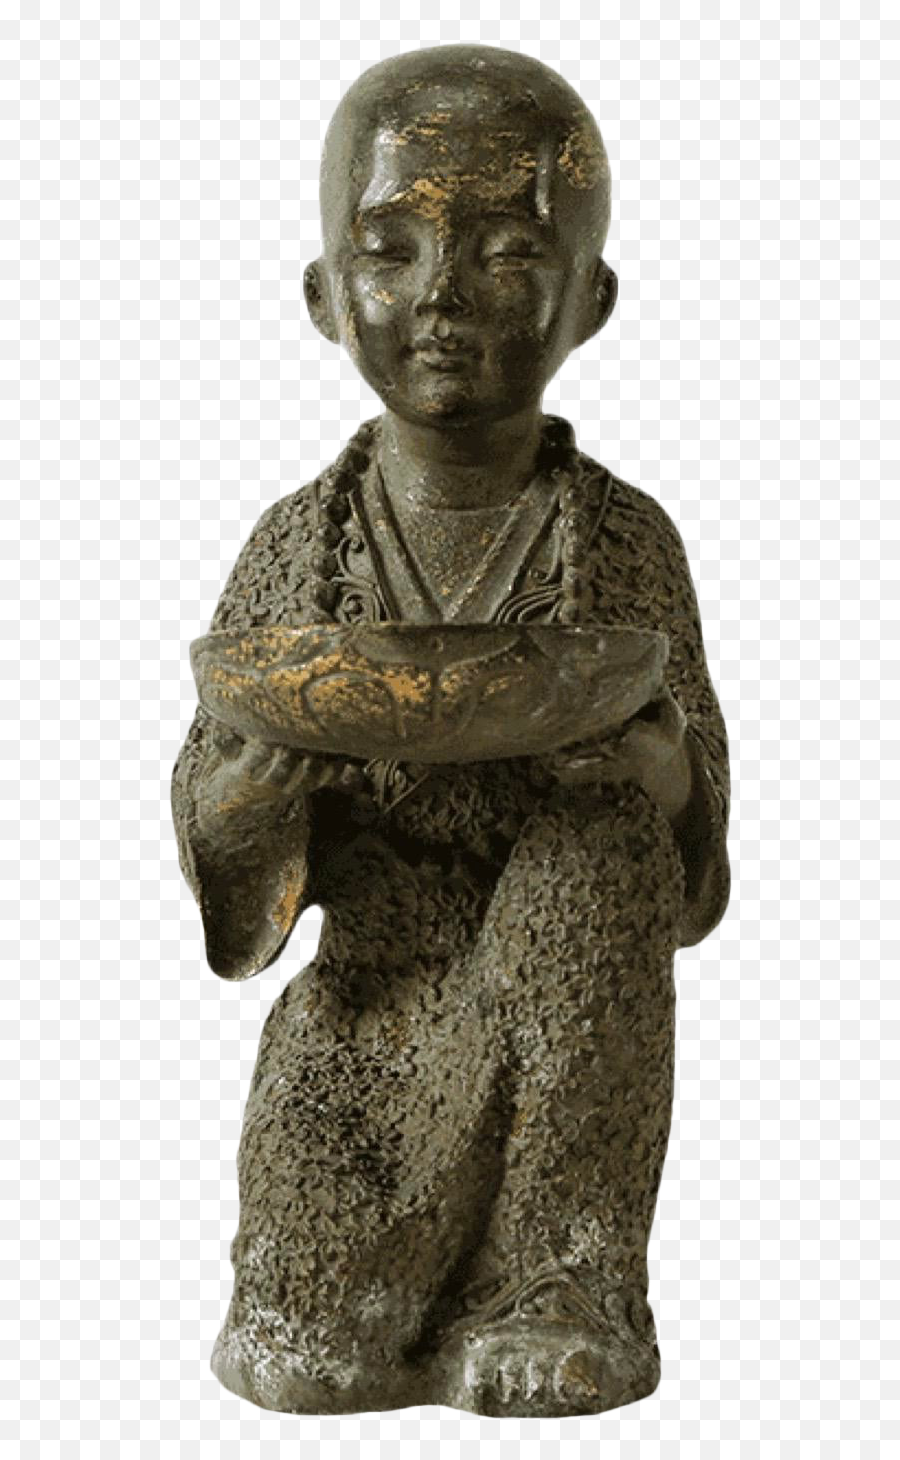 Brass Monk Figurine Emoji,Emotion Monk Statue